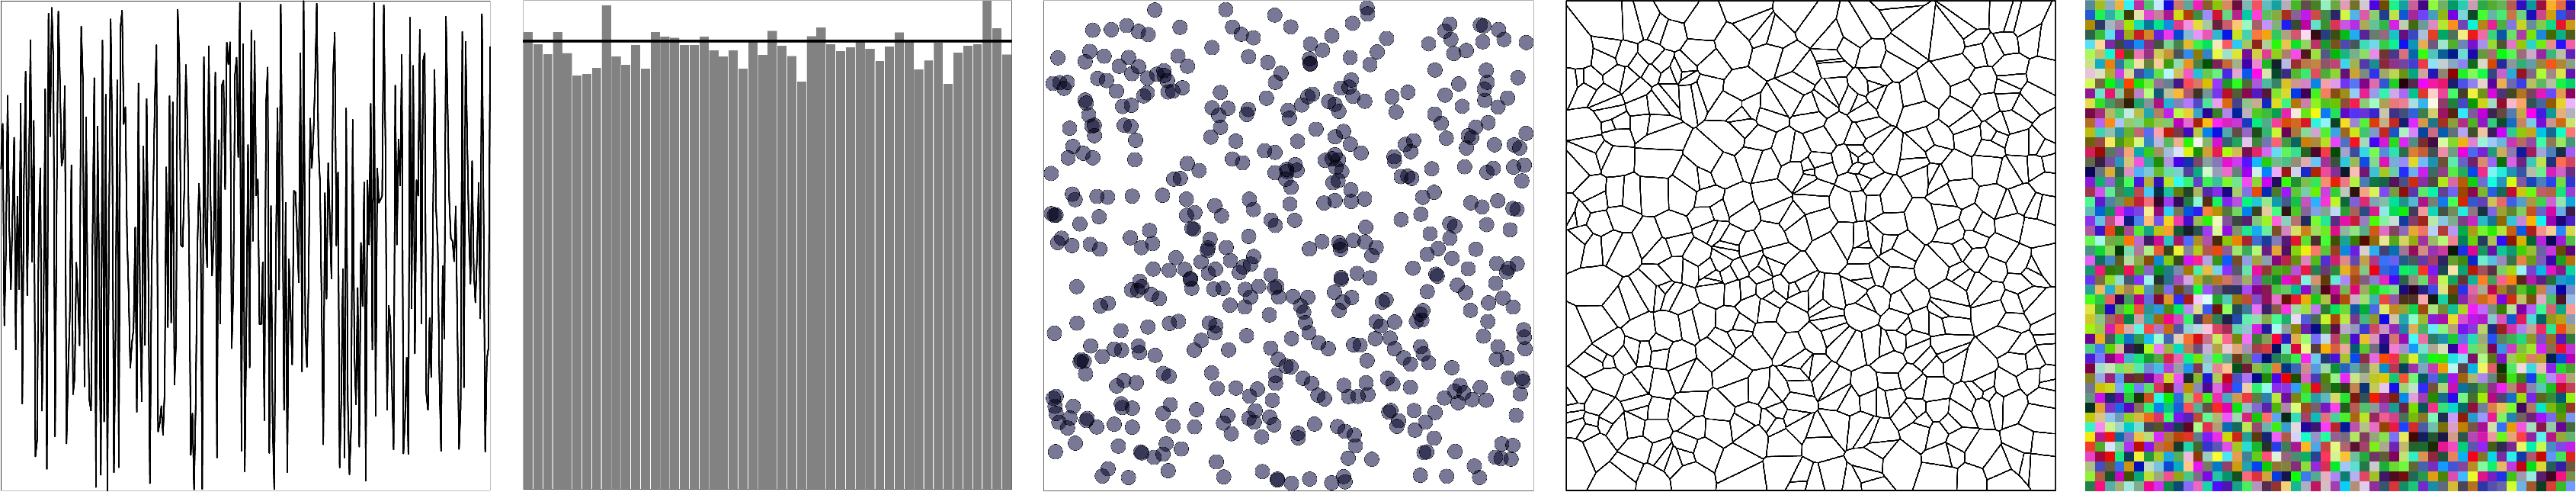 　図1：一様分布乱数 (左より乱数列プロット、ヒストグラム、2次元点プロット、ボロノイ分割、
　　　 RGB色列)